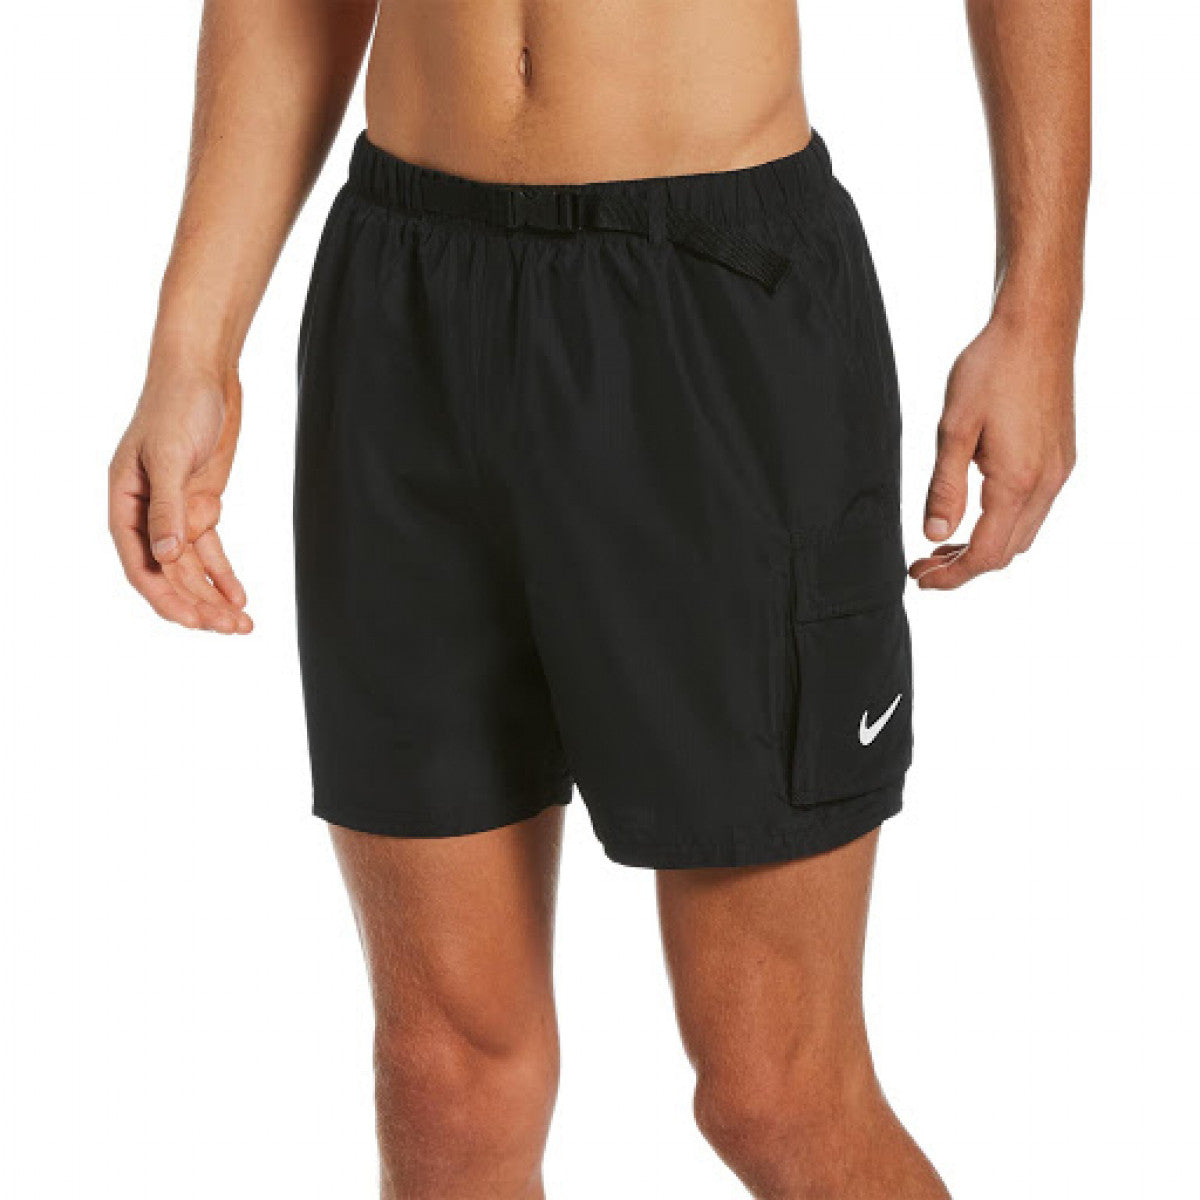 Nike Swimwear Belted Packable - Nike